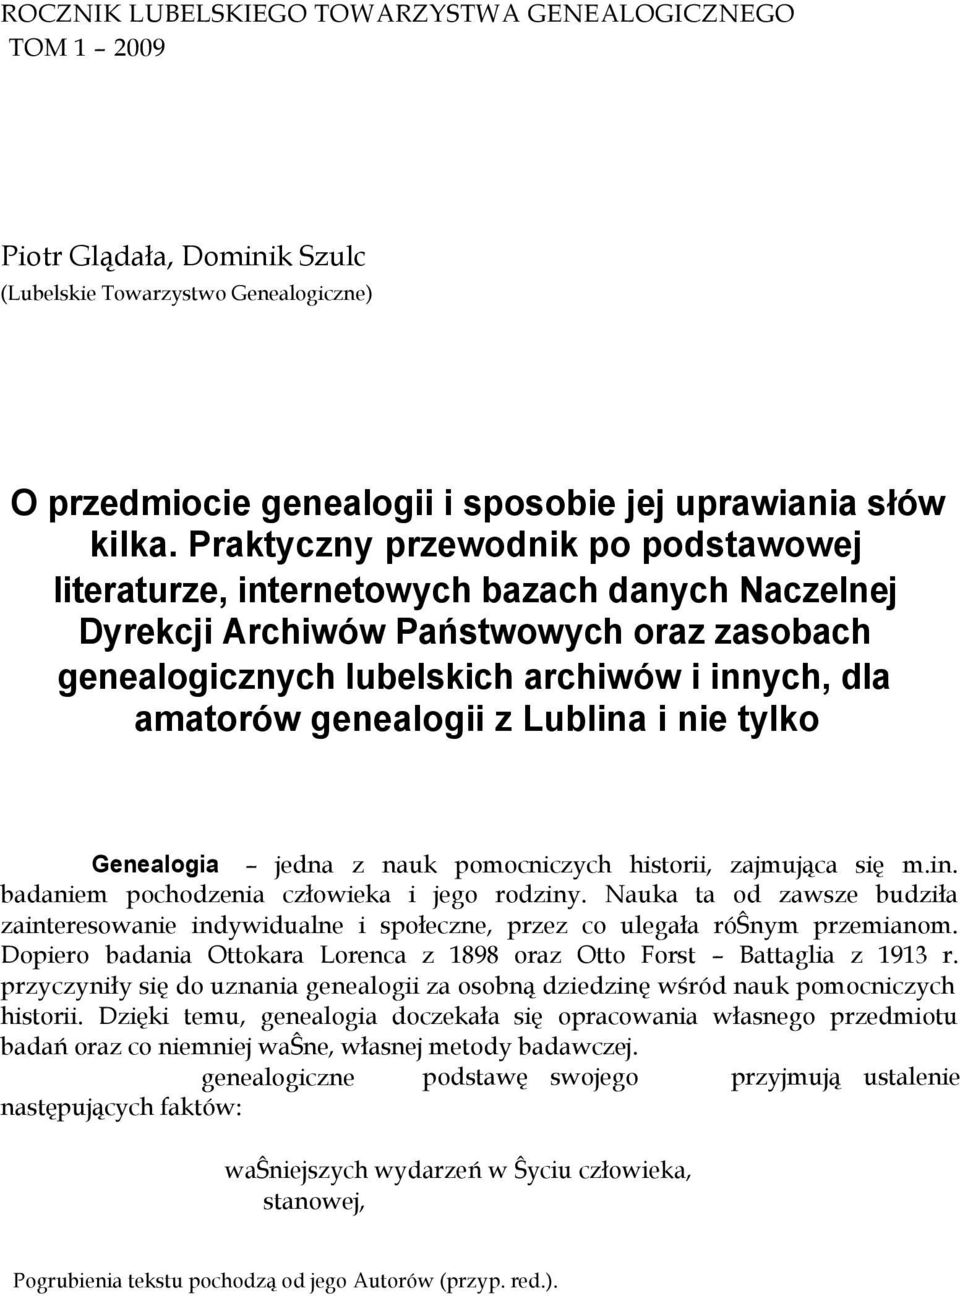 genealogii z Lublina i nie tylko Genealogia jedna z nauk pomocniczych historii, zajmująca się m.in. badaniem pochodzenia człowieka i jego rodziny.